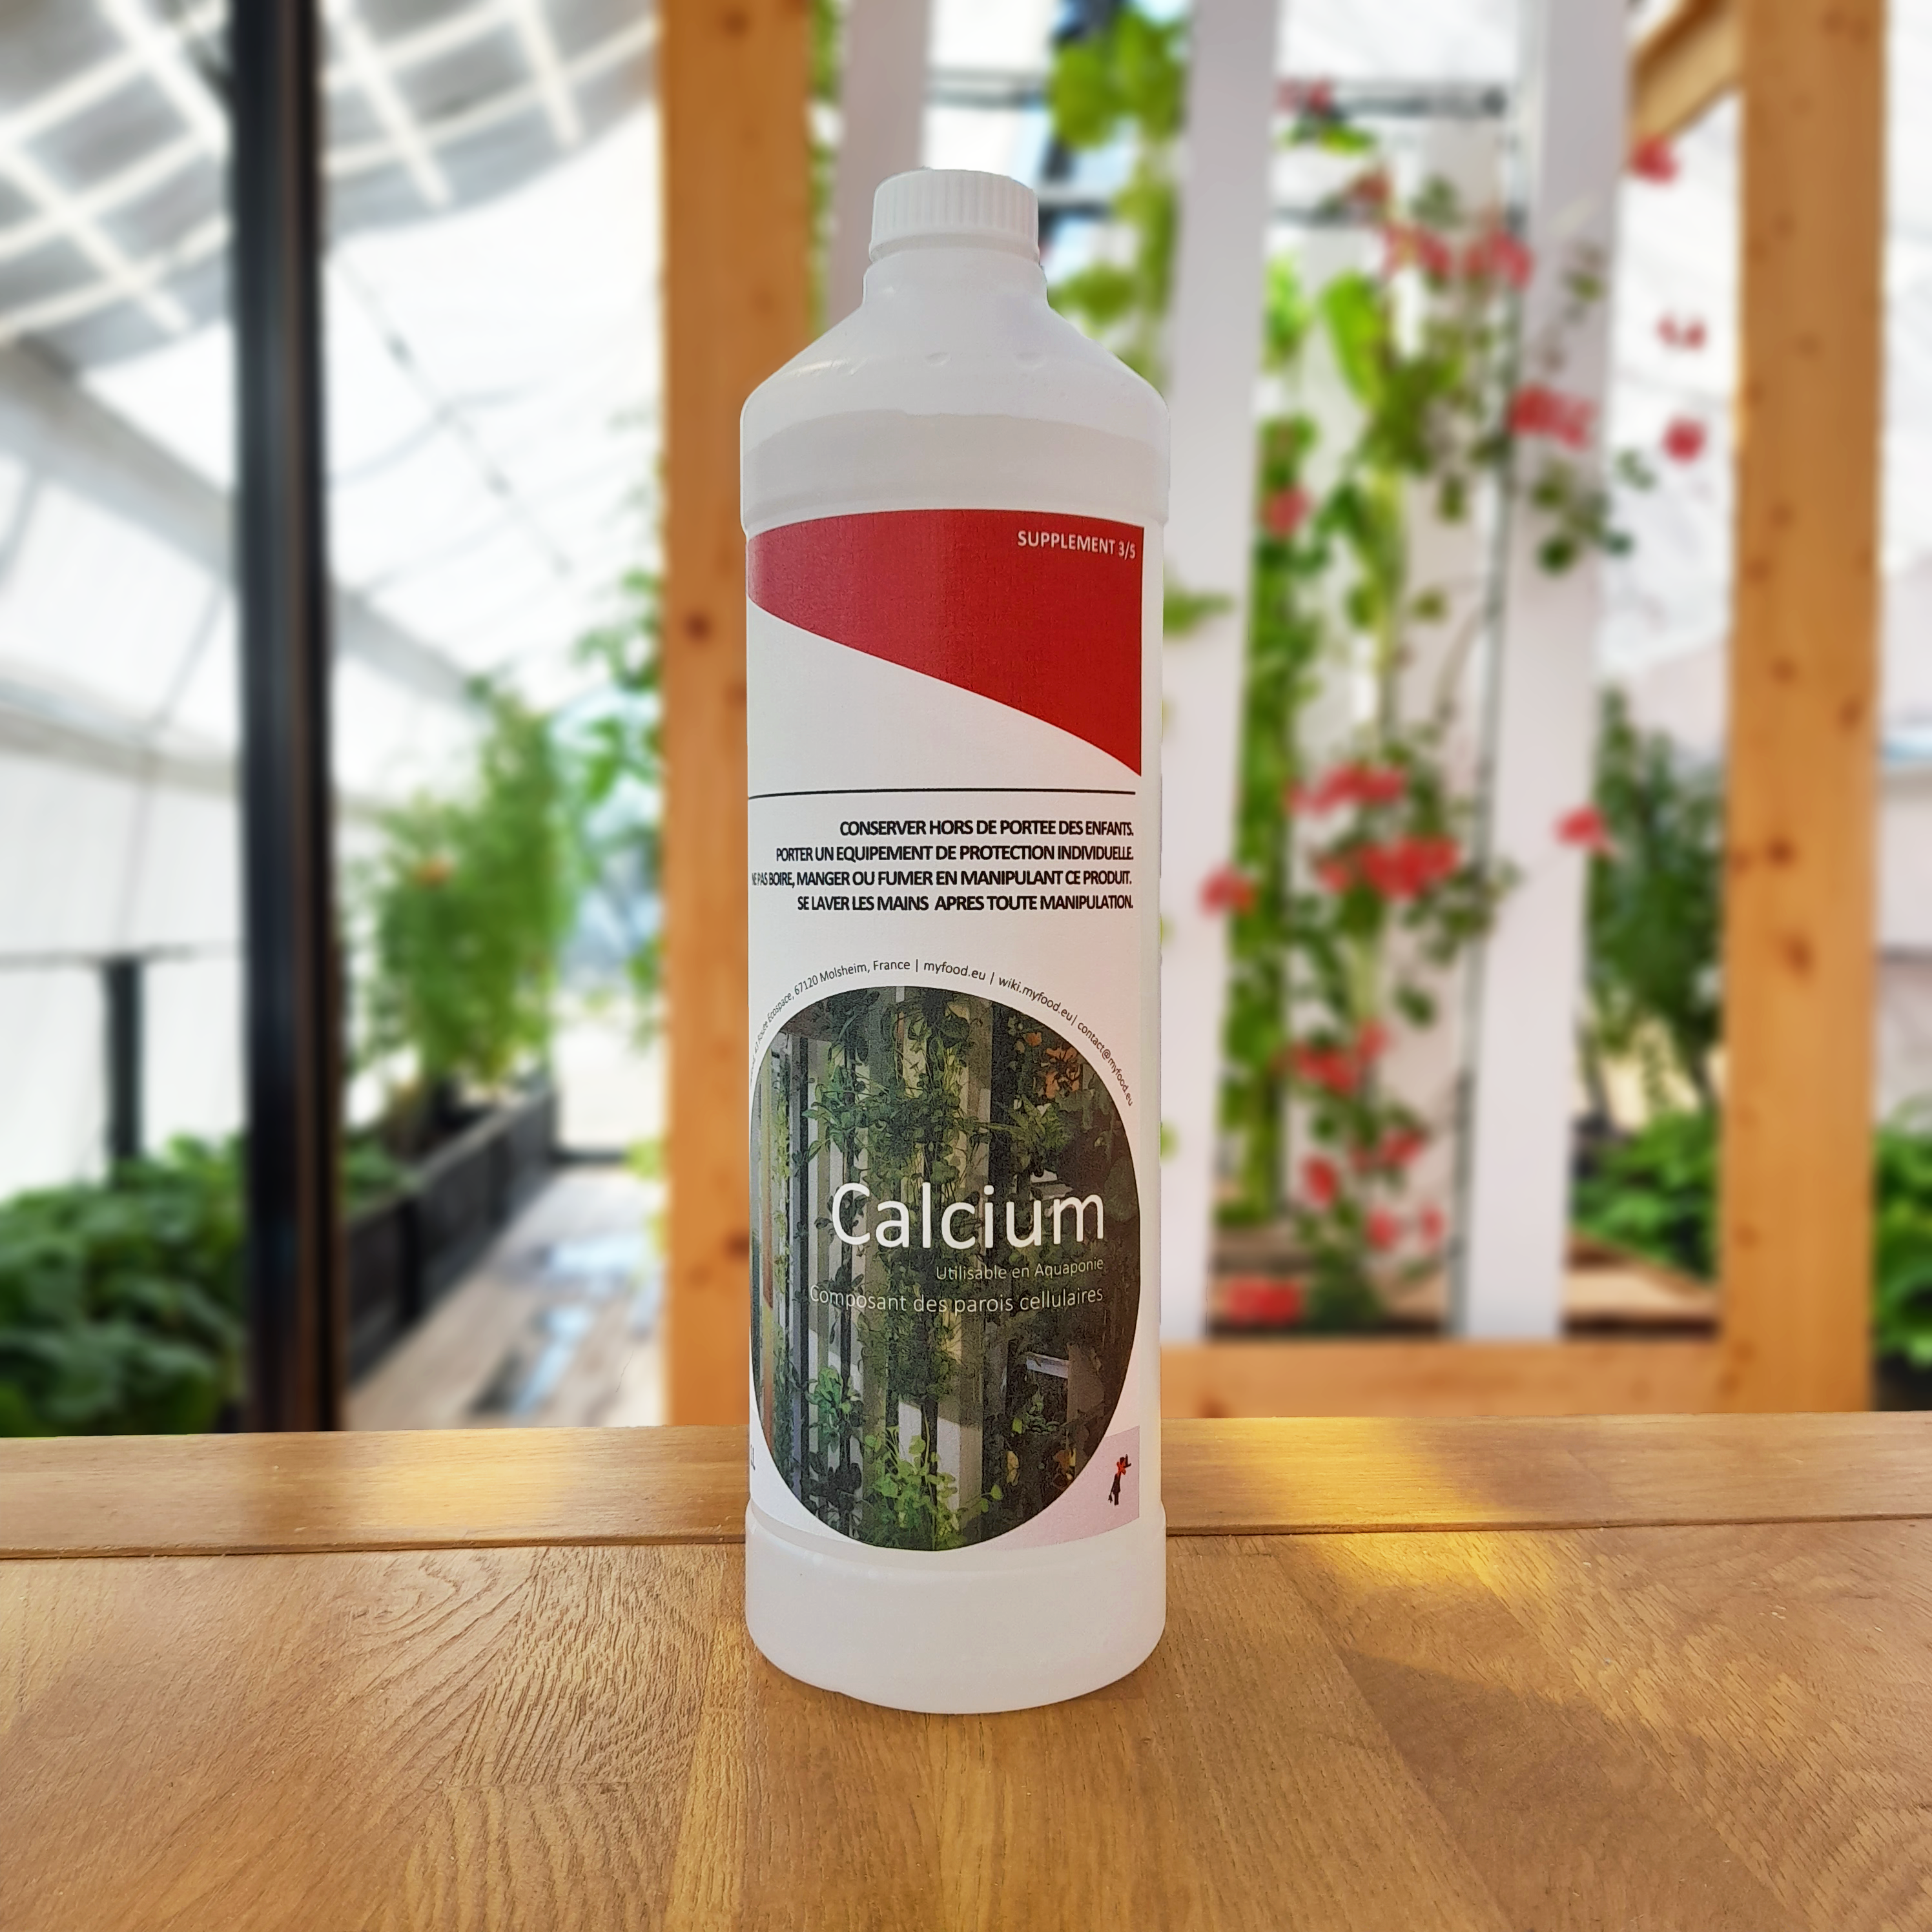 Chlorure de calcium (1L)